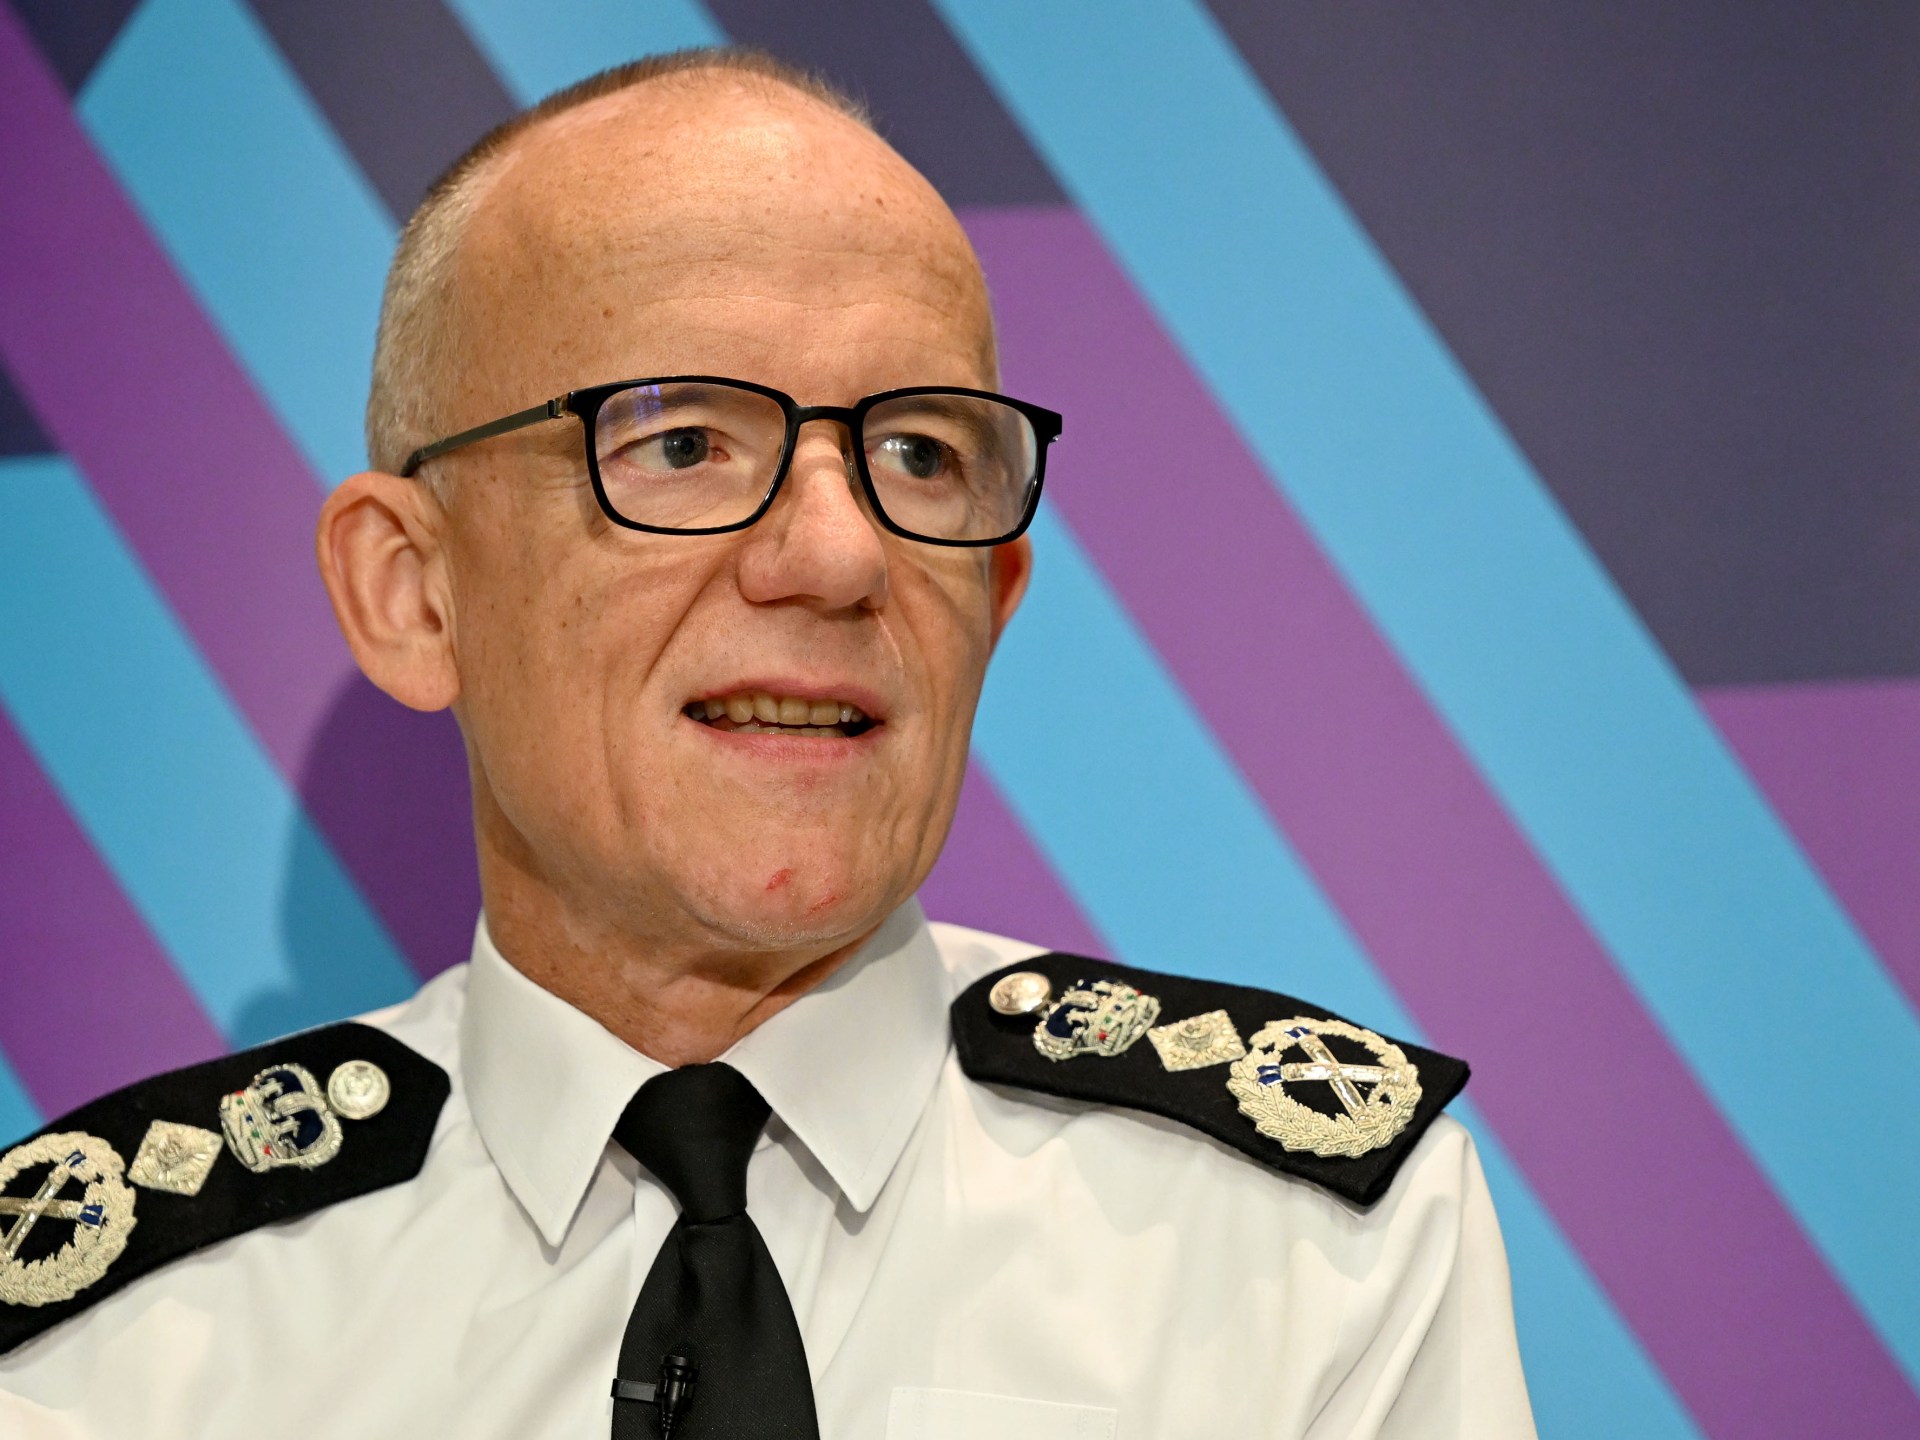 ضغوط لإقالة قائد شرطة لندن بسبب مظاهرات دعم غزة | أخبار – البوكس نيوز